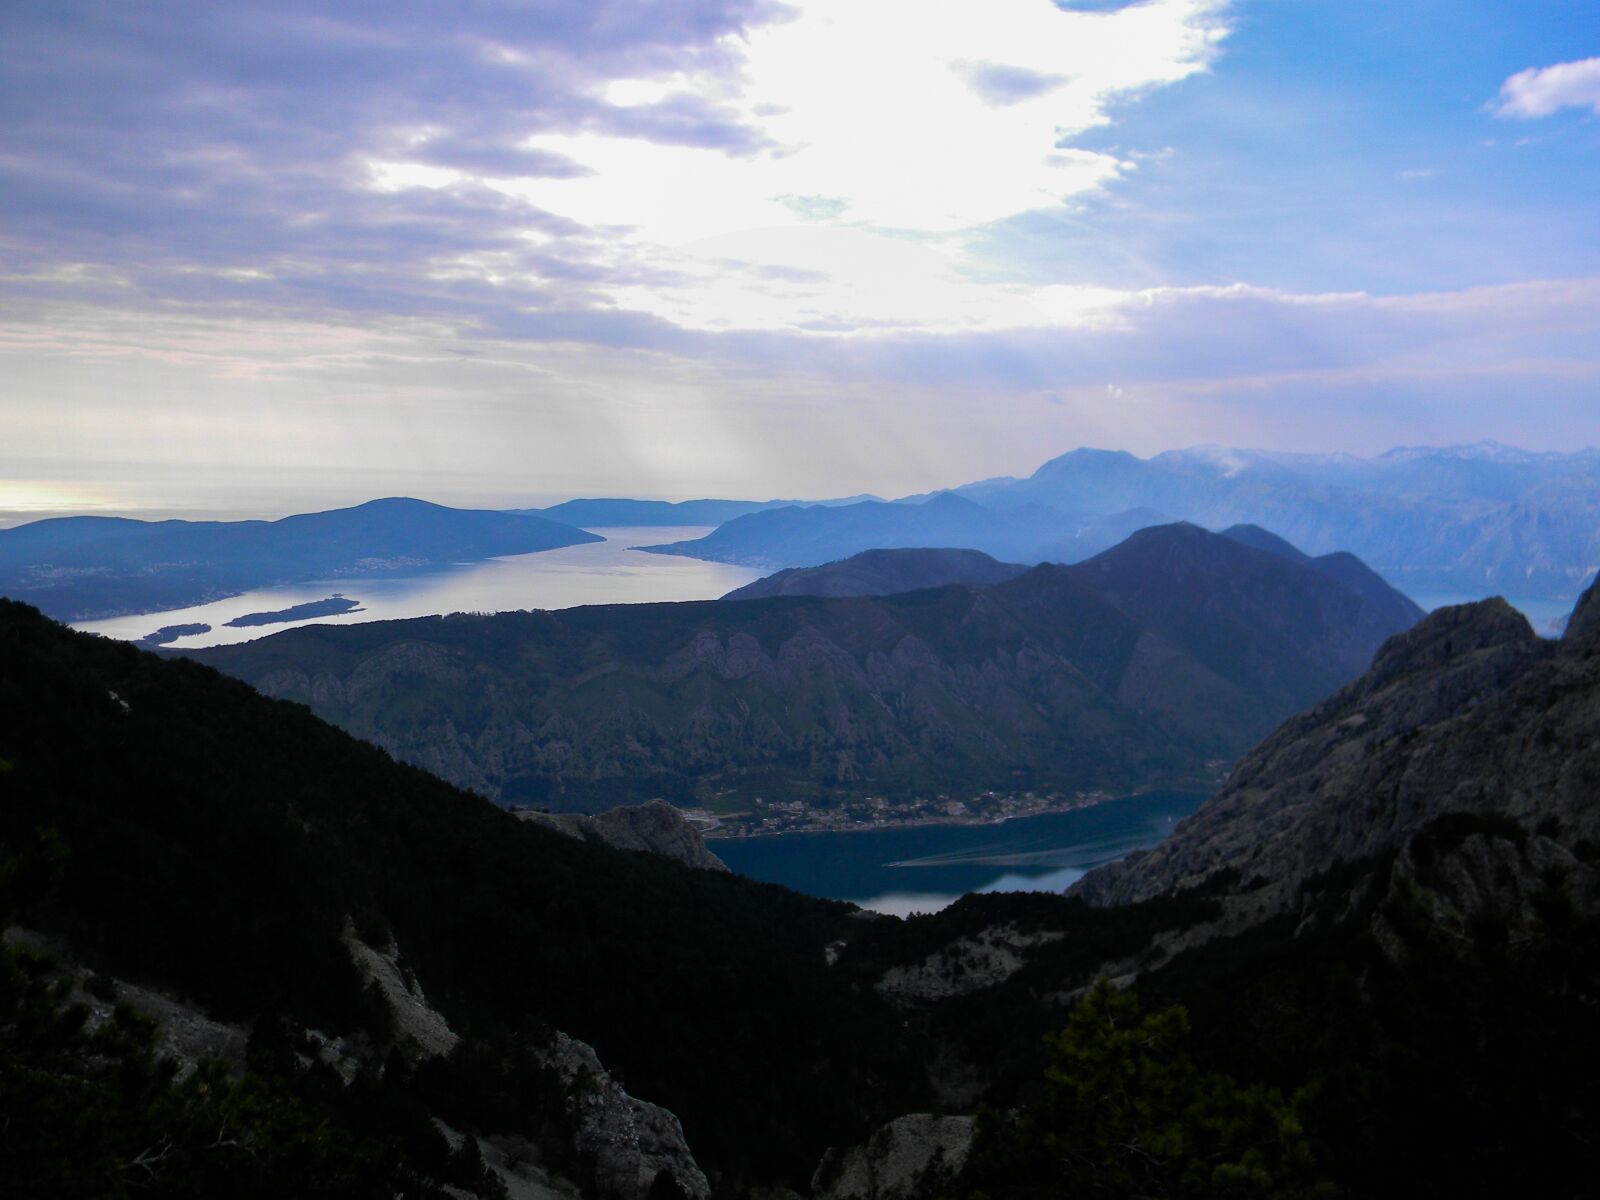 Nikon Coolpix L110 sample photo. Mountain, panoramic, nature photography